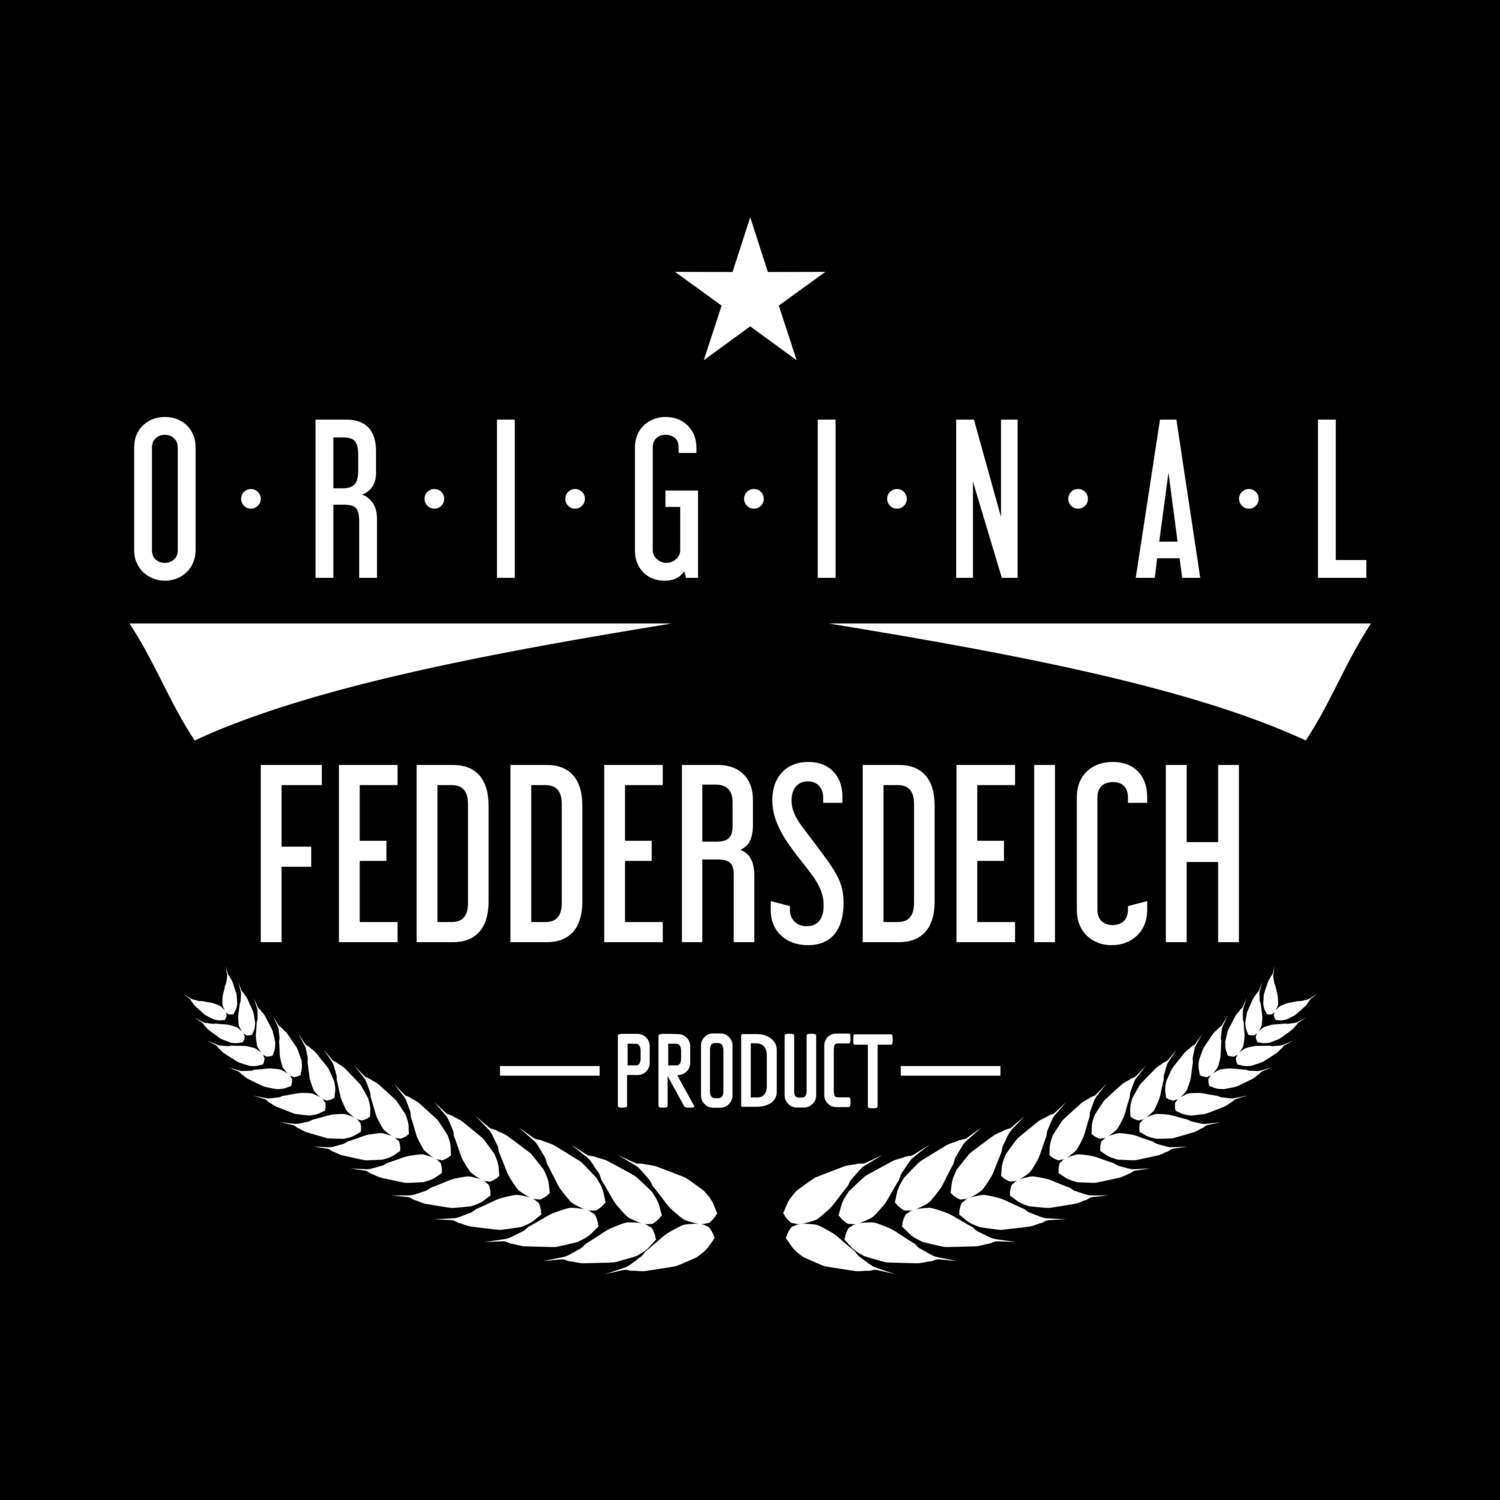 Feddersdeich T-Shirt »Original Product«